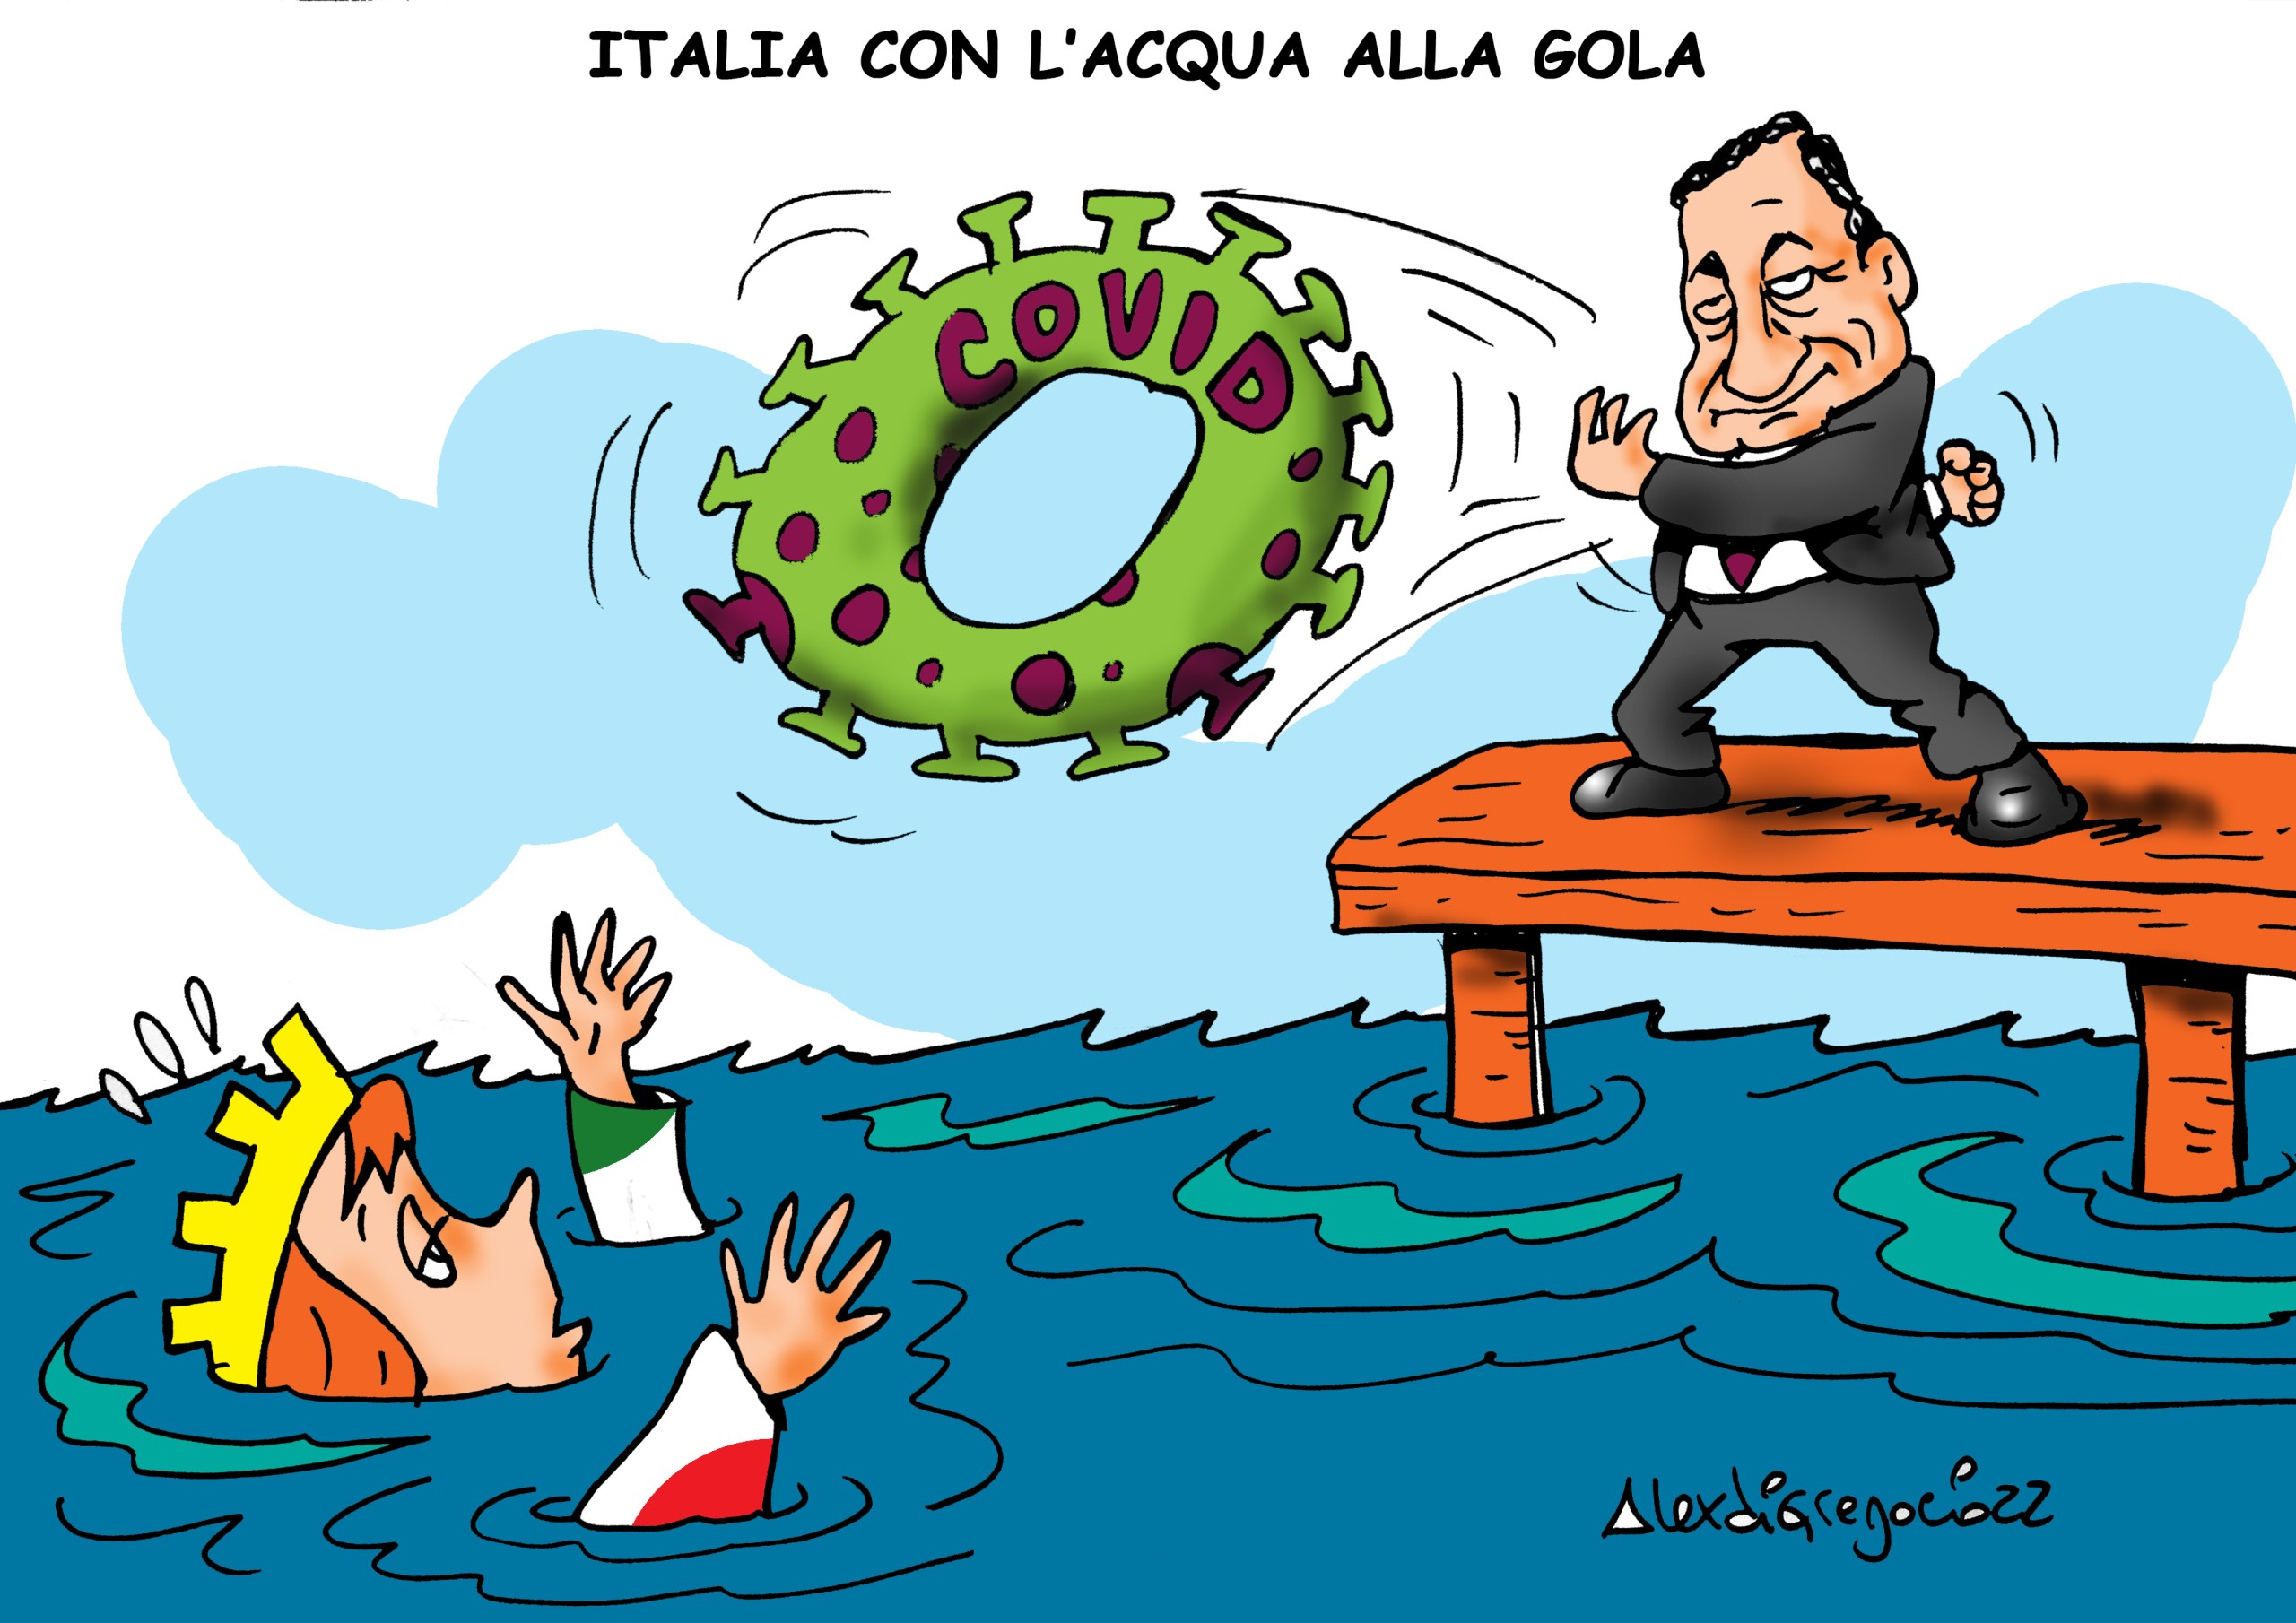 Italia con l’acqua alla gola